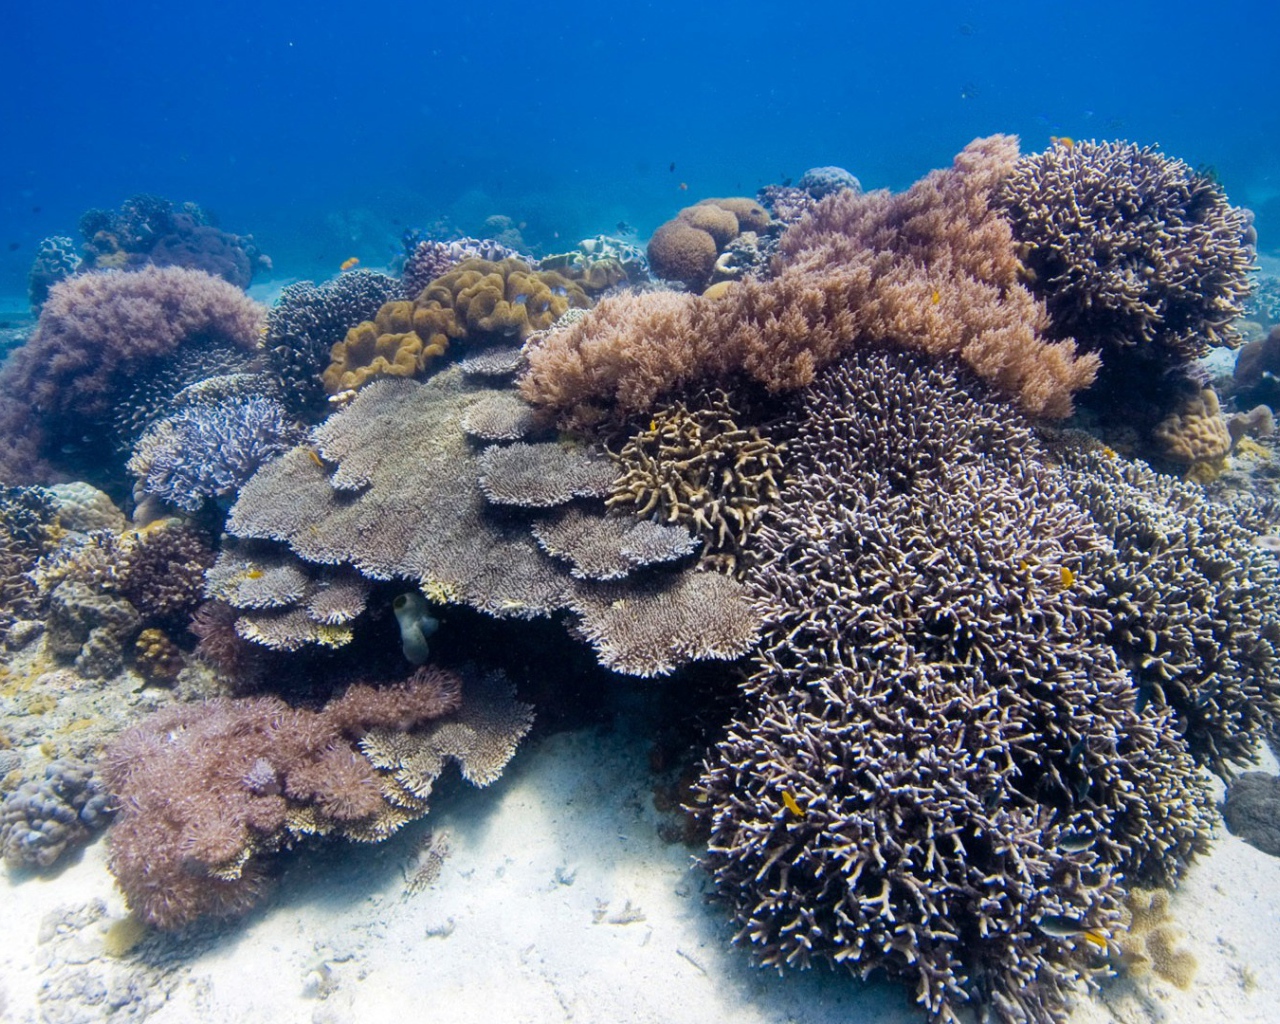 Коралловые полипы на дне моря